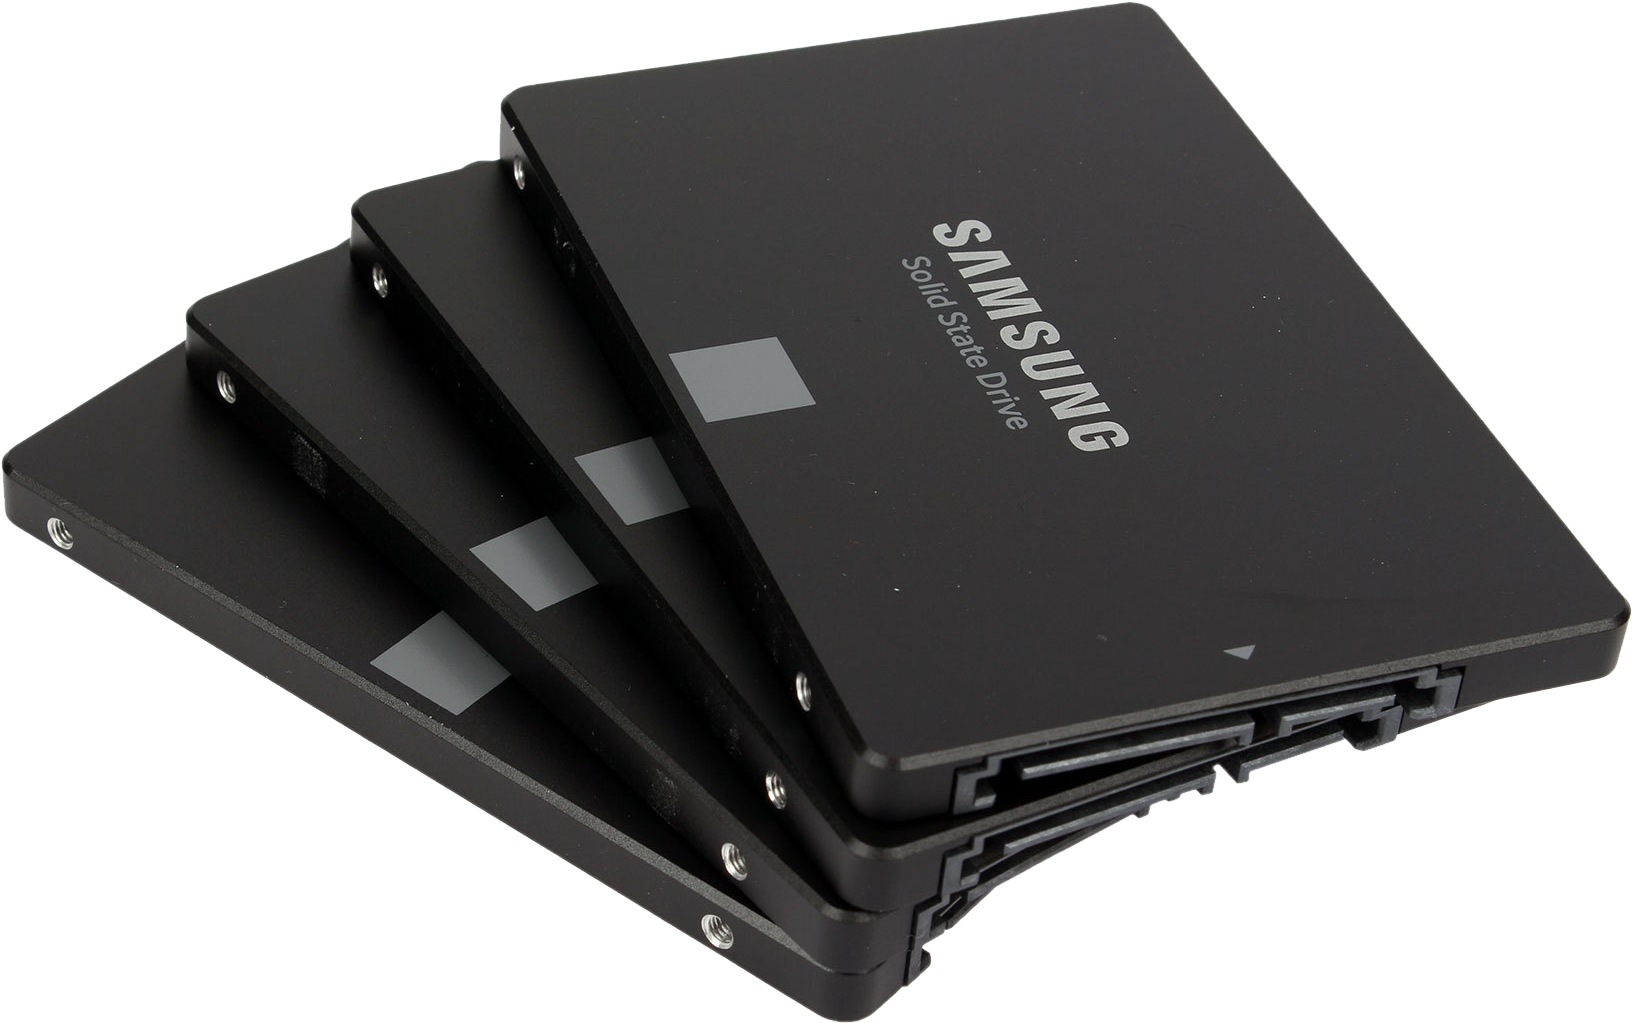 SSD / Storage